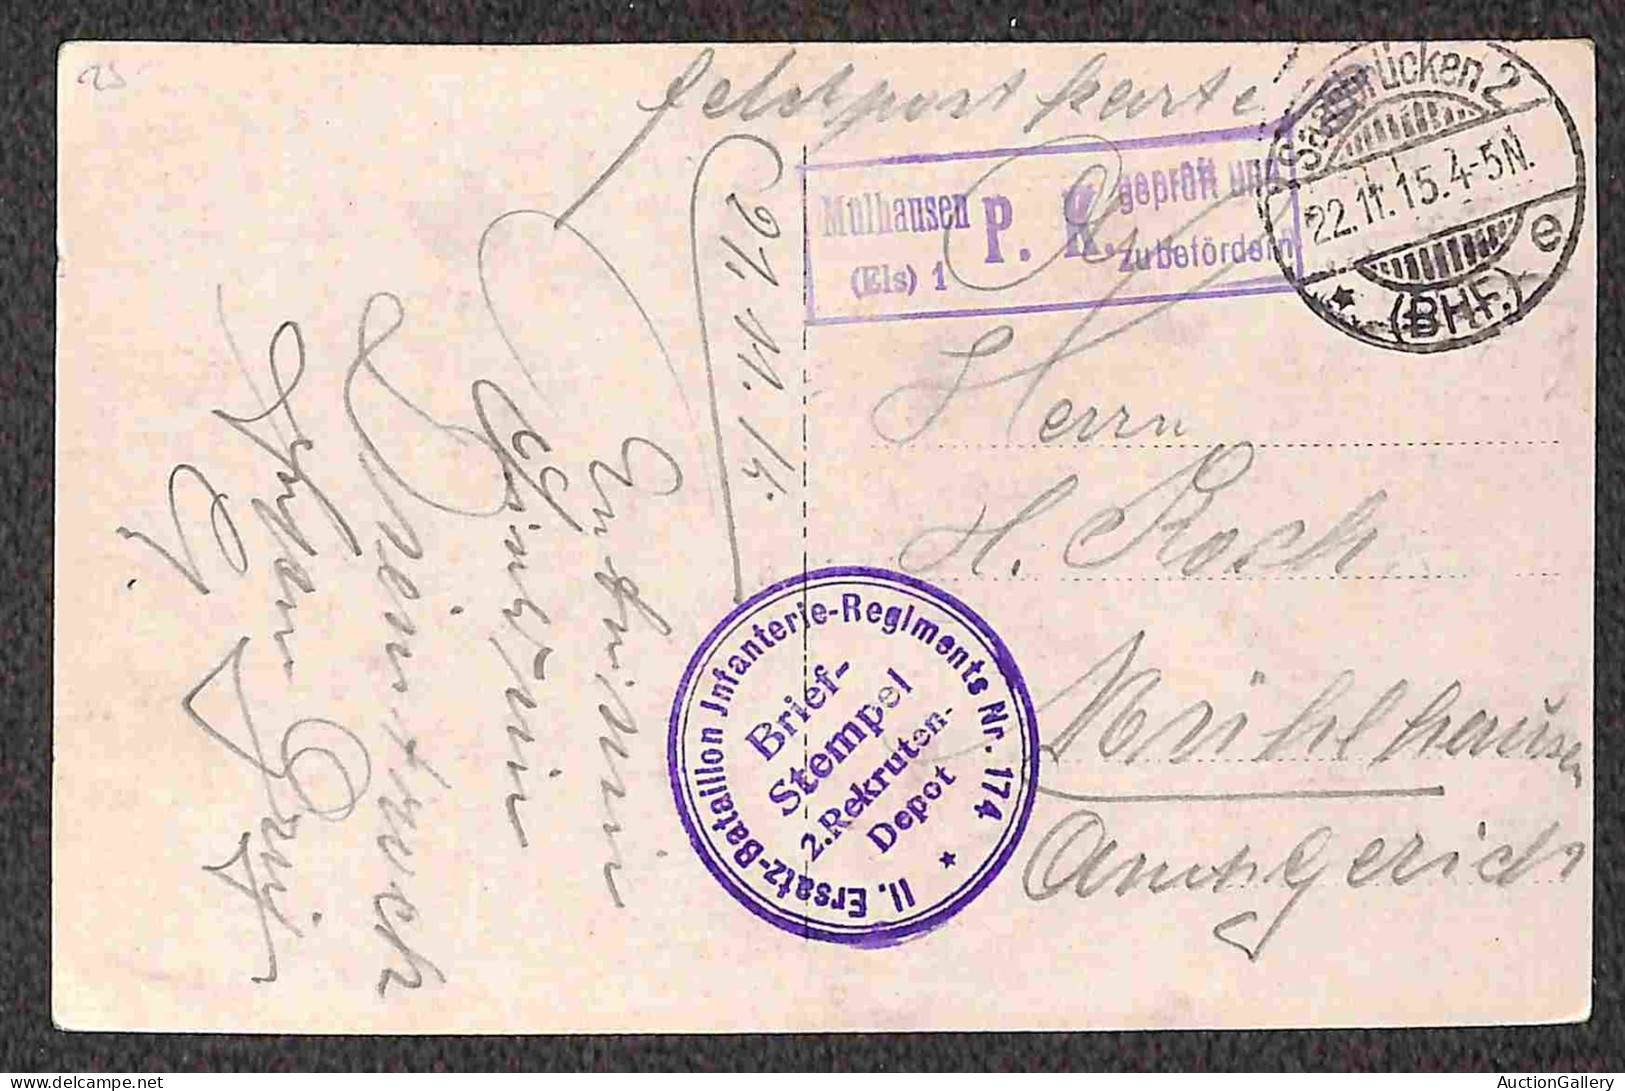 Europa - Germania - Feldpost - 1914/1916 - Quattro cartoline fotografiche